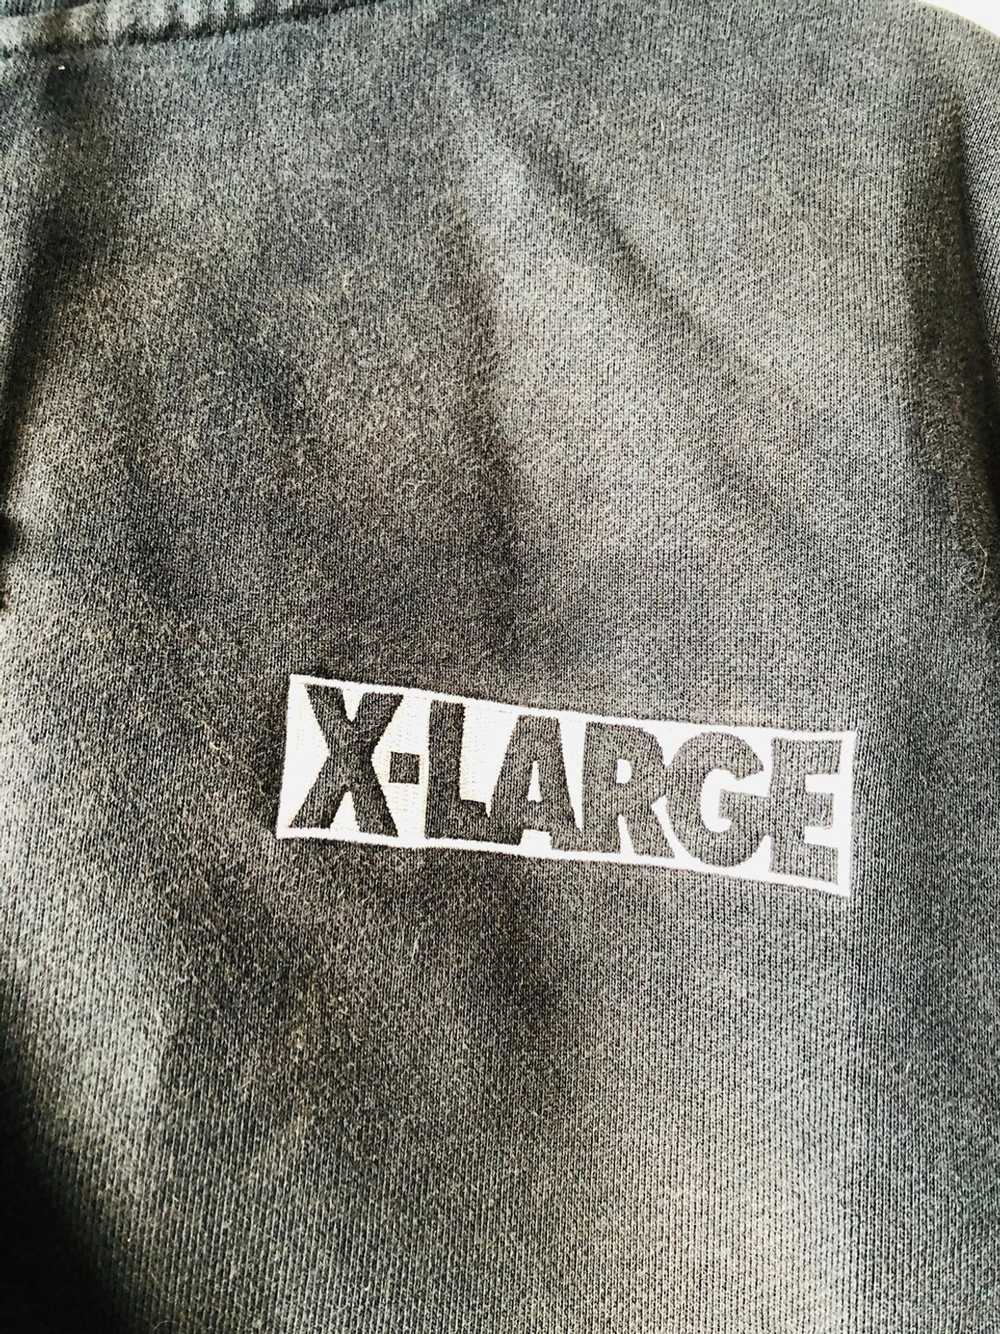 Xlarge Sweater zipper Xlarge Los Angeles - image 6